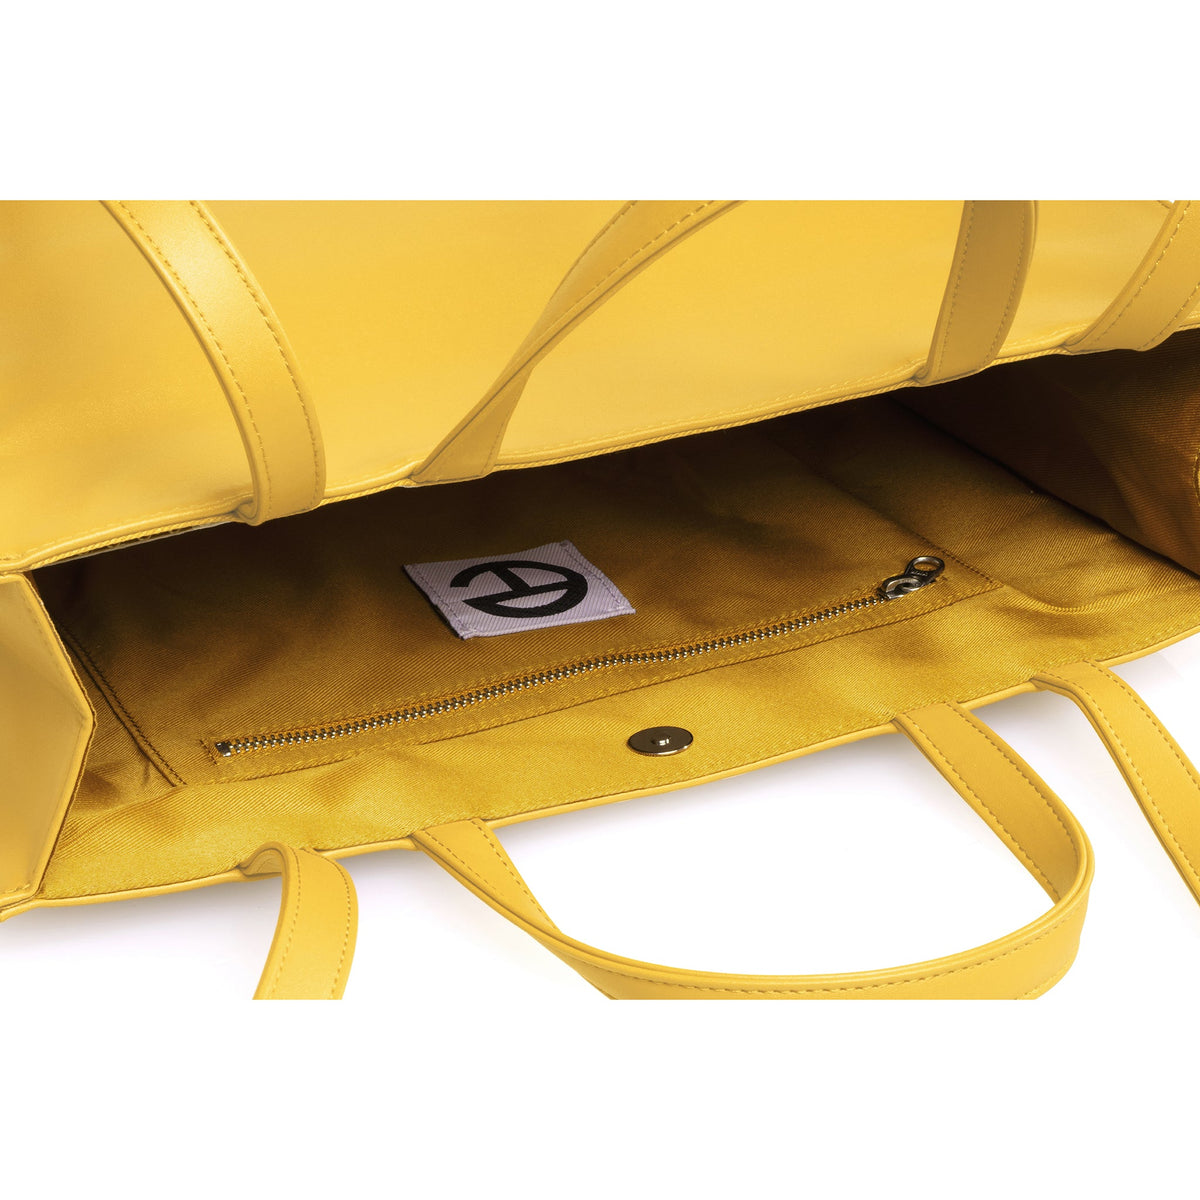 Medium Shopping Bag - Yellow